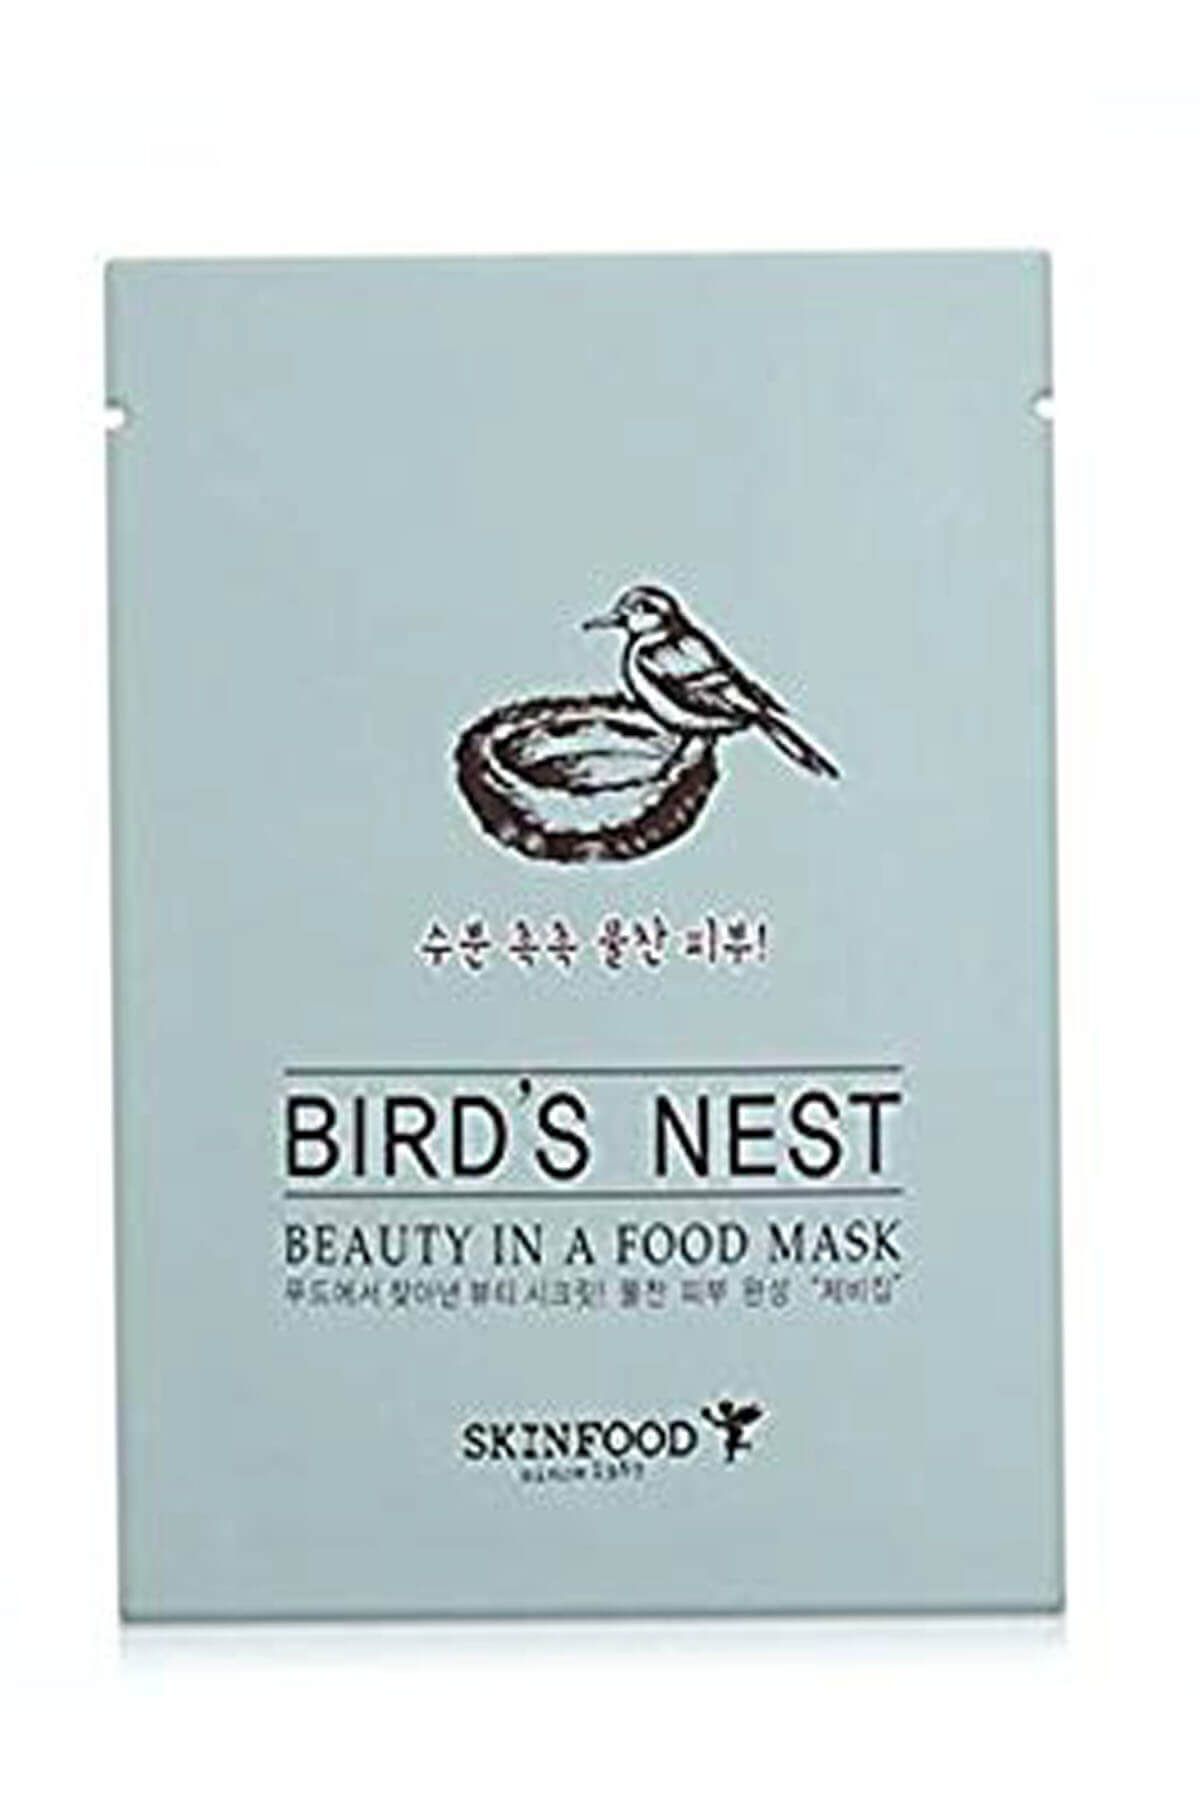 Skinfood Maske - Beauty in a Food Mask Sheet - Birds Nest 20 ml 8809427862275